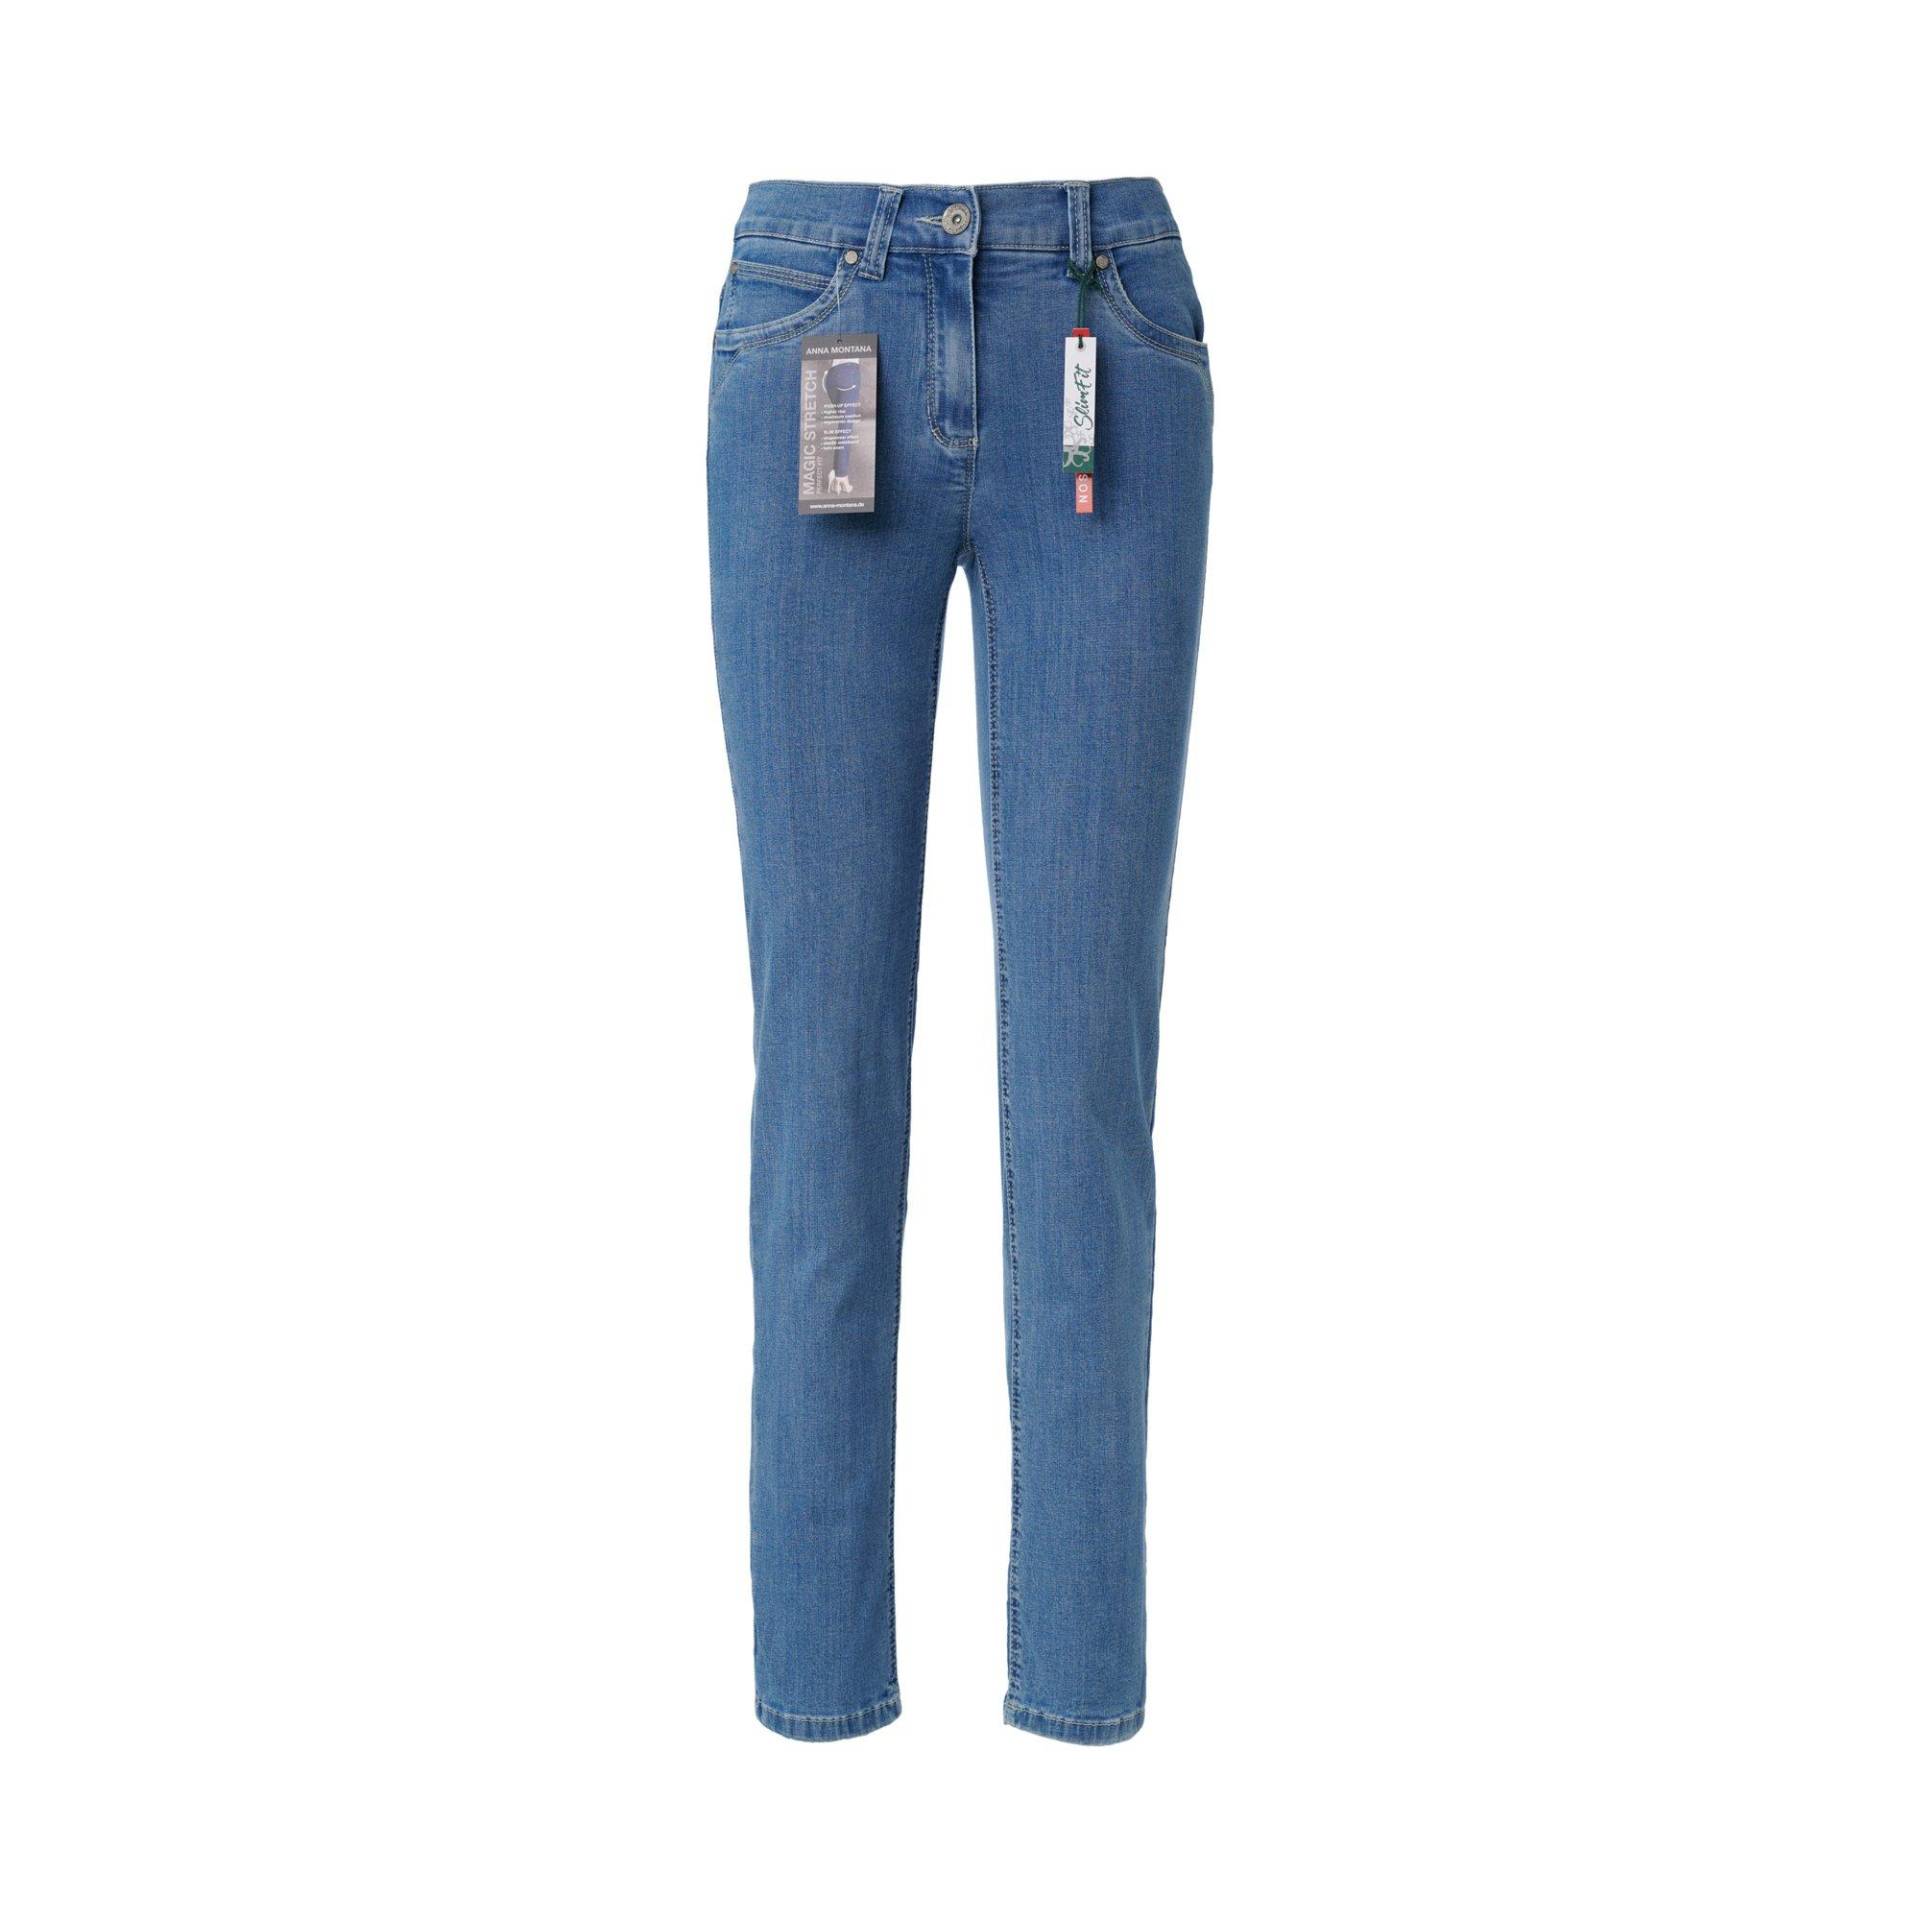 Jeans, Slim Fit Damen Bleached Blau 38 von ANNA MONTANA